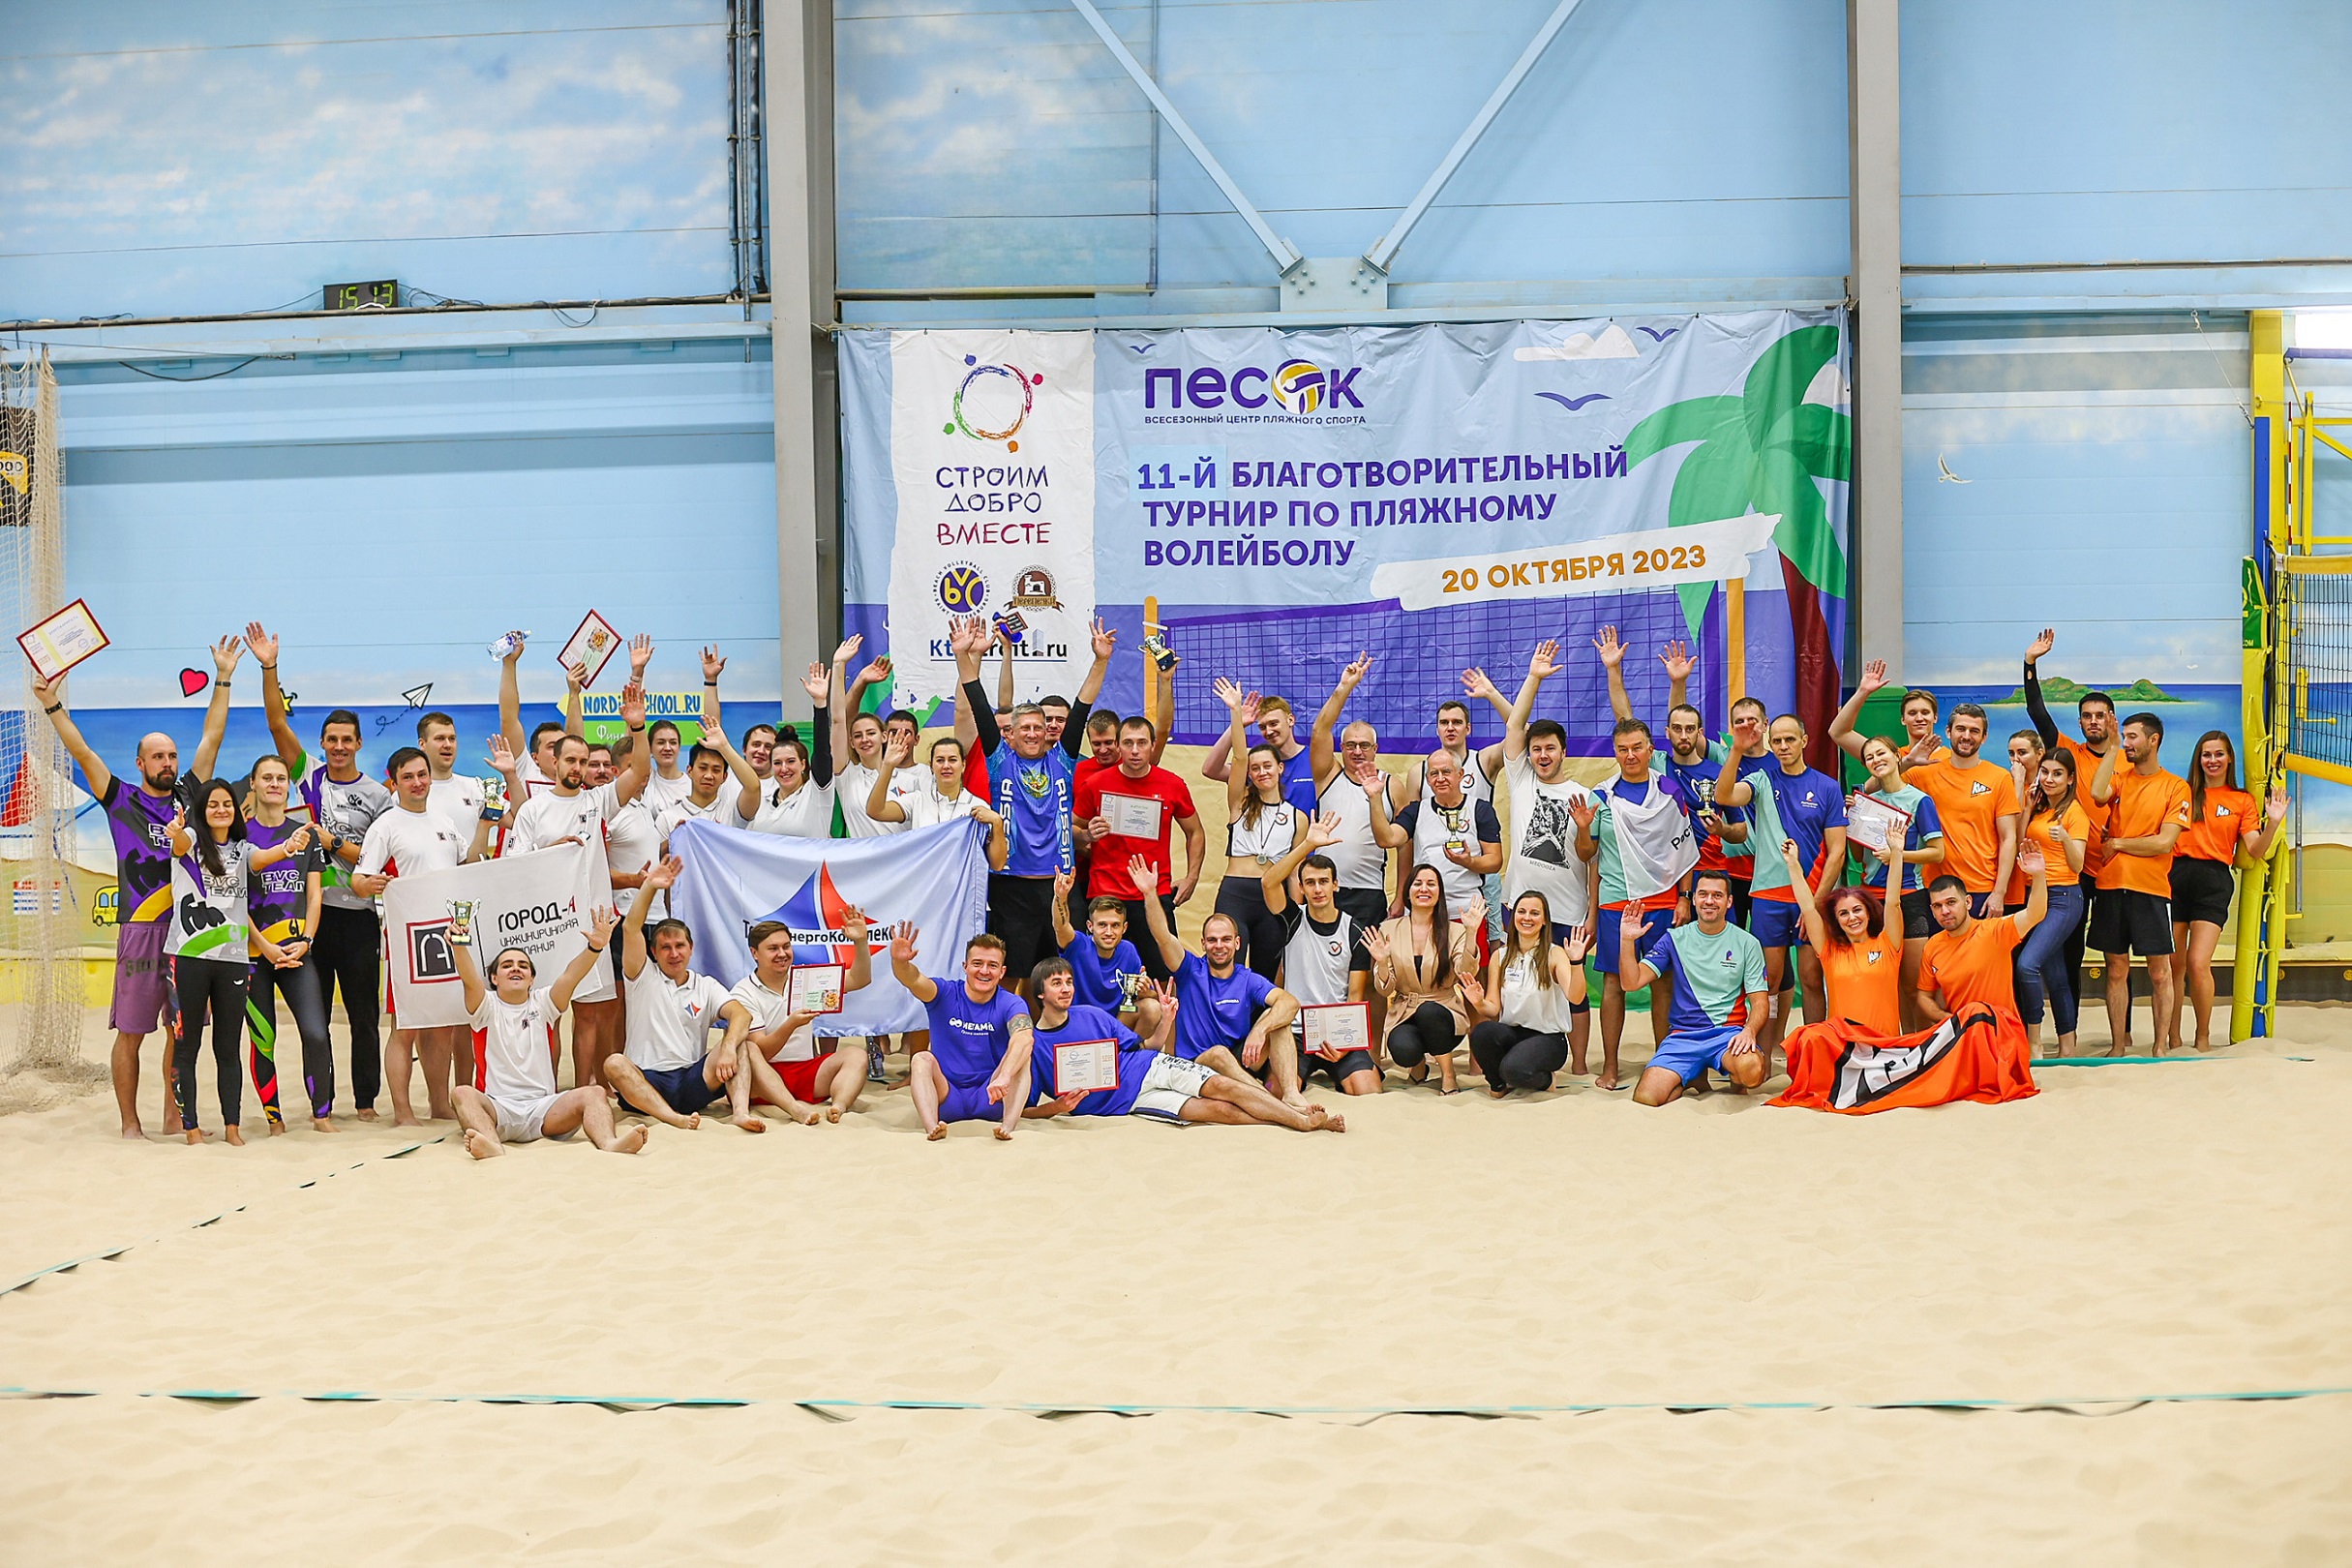 XI Благотворительный турнир по пляжному волейболу состоялся!